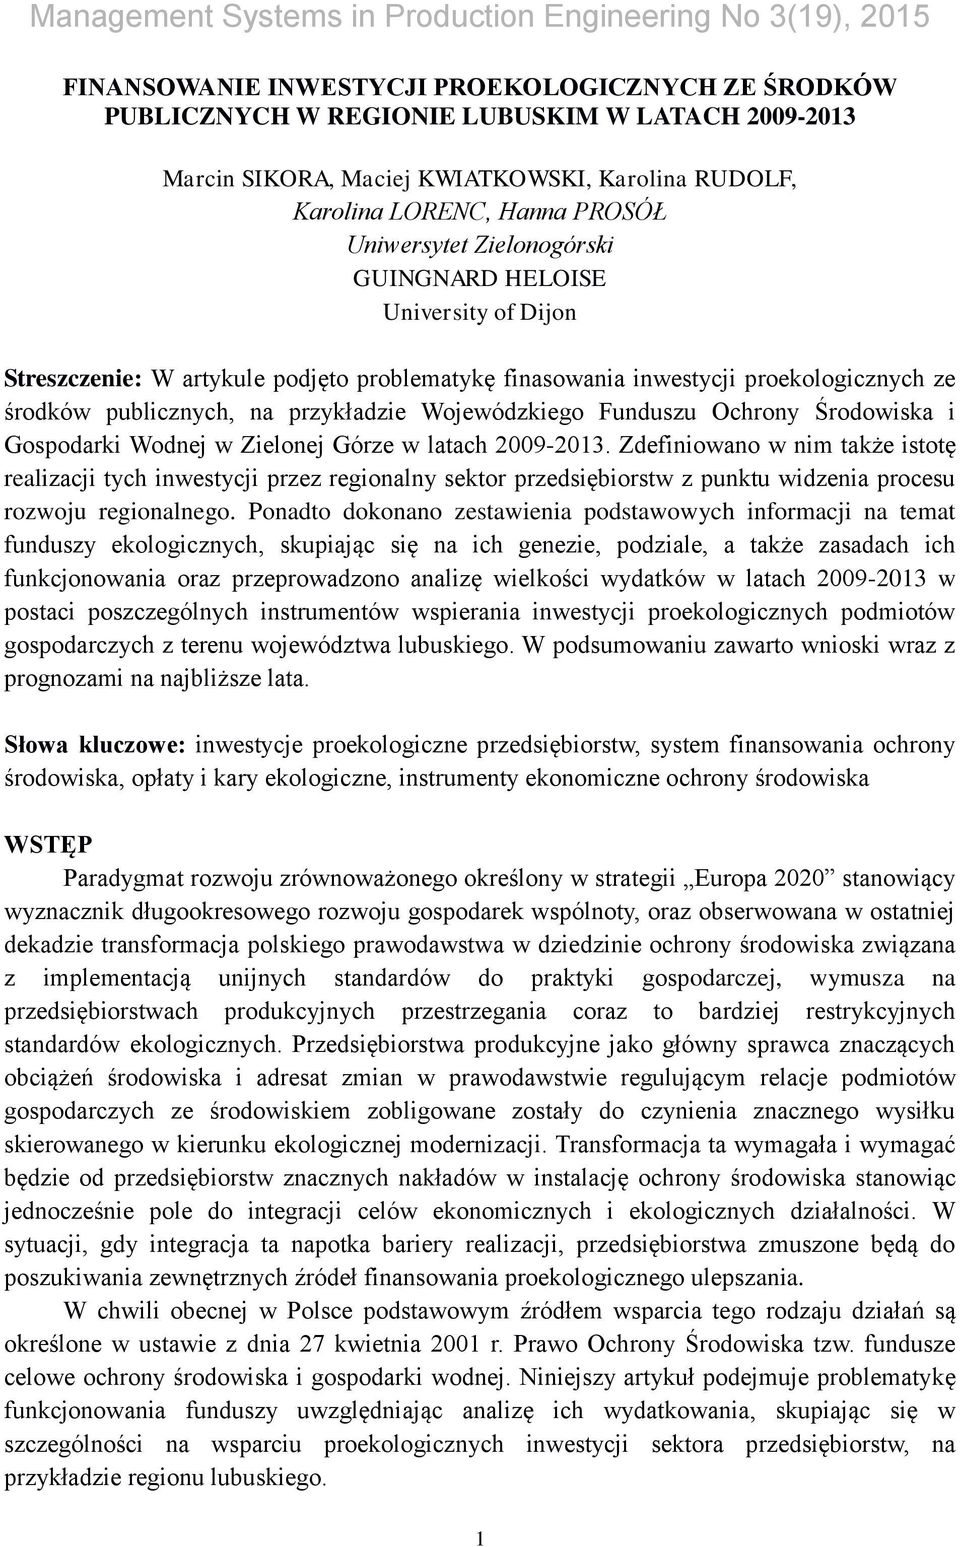 Ochrony Środowiska i Gospodarki Wodnej w Zielonej Górze w latach 2009-2013.